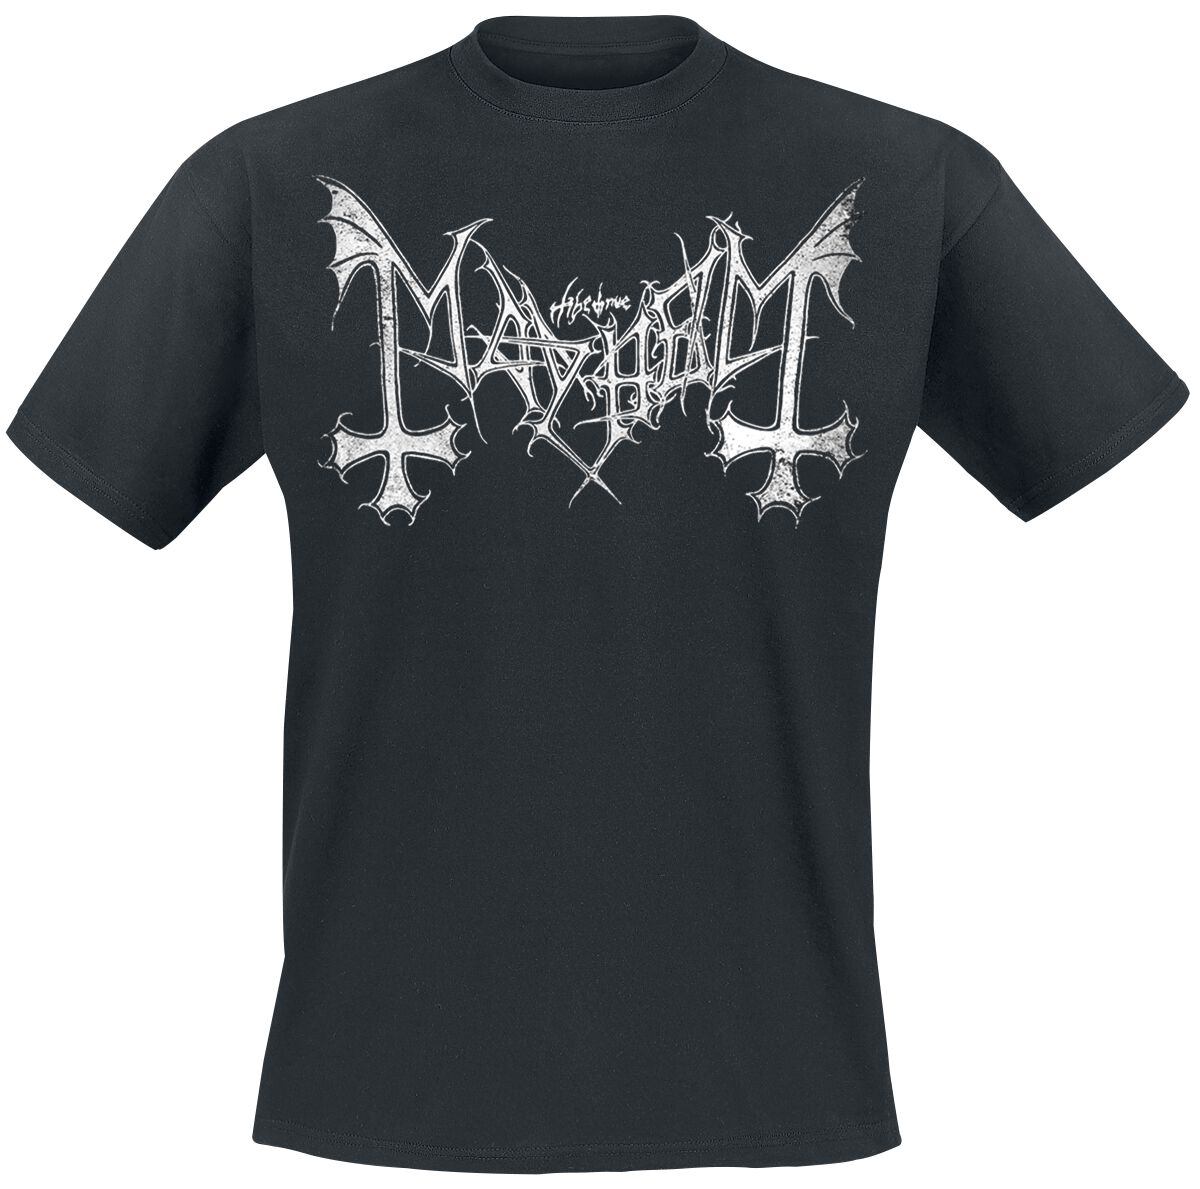 Mayhem T-Shirt - Distressed Logo - S bis XL - für Männer - Größe S - schwarz  - Lizenziertes Merchandise!